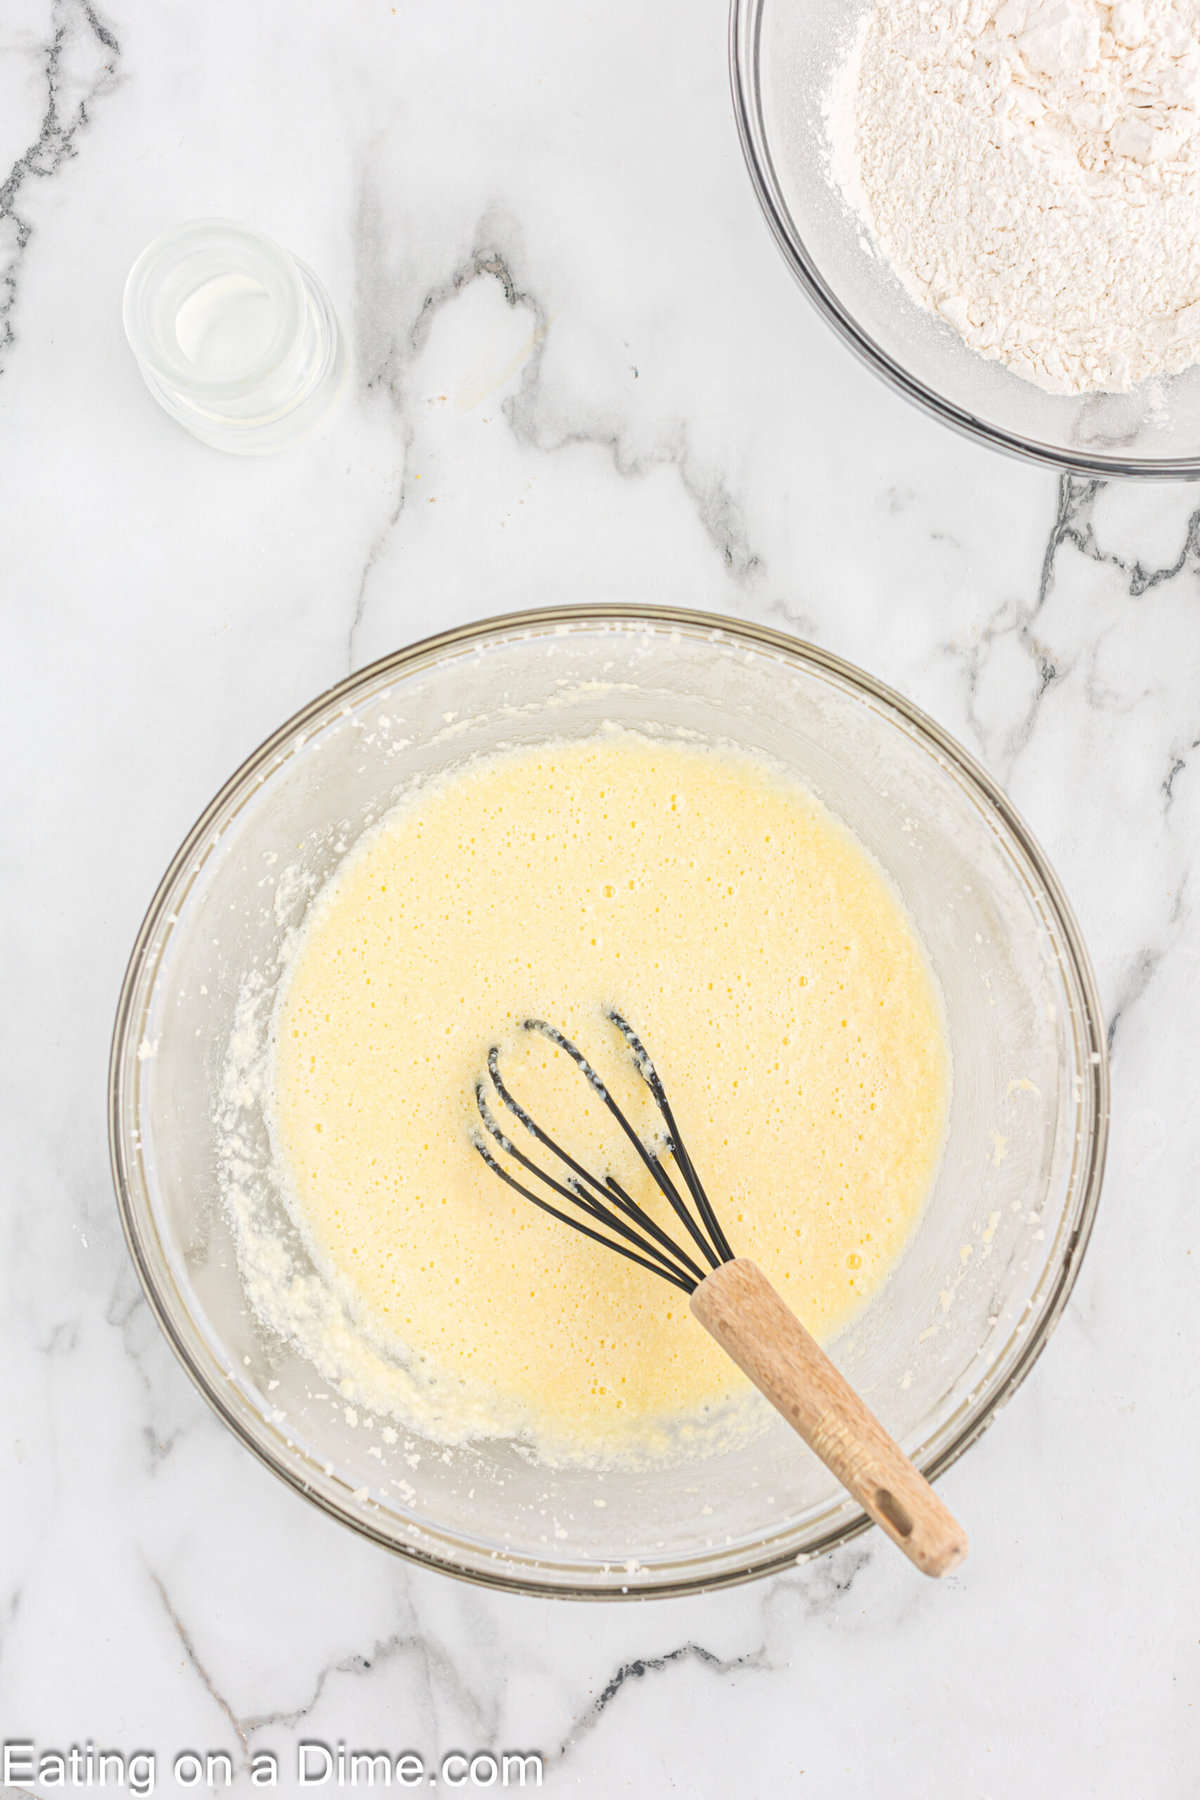 Mix in buttermilk to wet ingredients